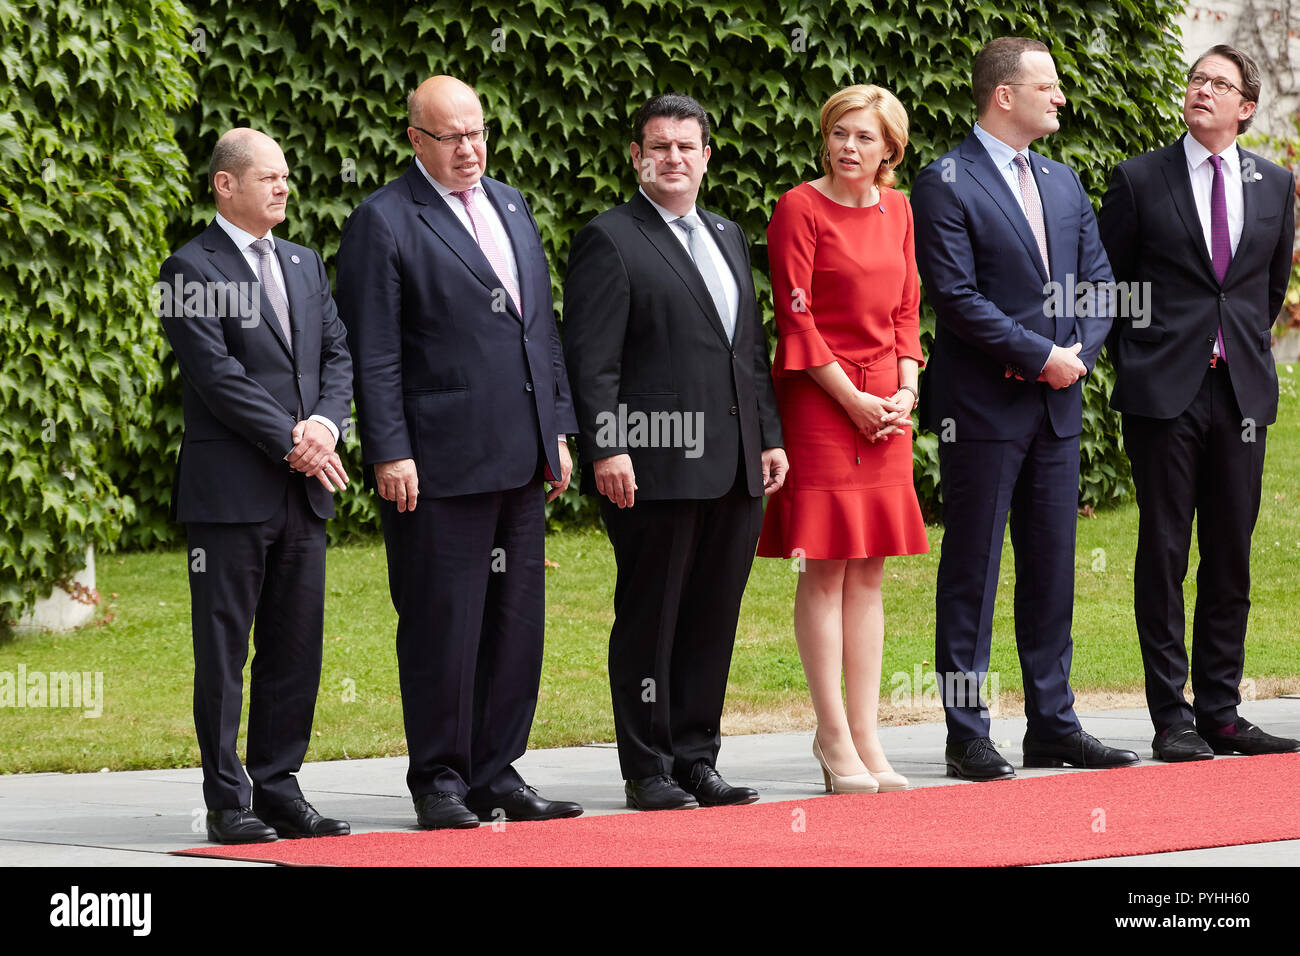 Berlin, Allemagne - Le cabinet fédéral est debout sur le tapis rouge lors de la visite d'état du Premier ministre chinois dans la cour de la Chancellerie fédérale d'honneur. Banque D'Images